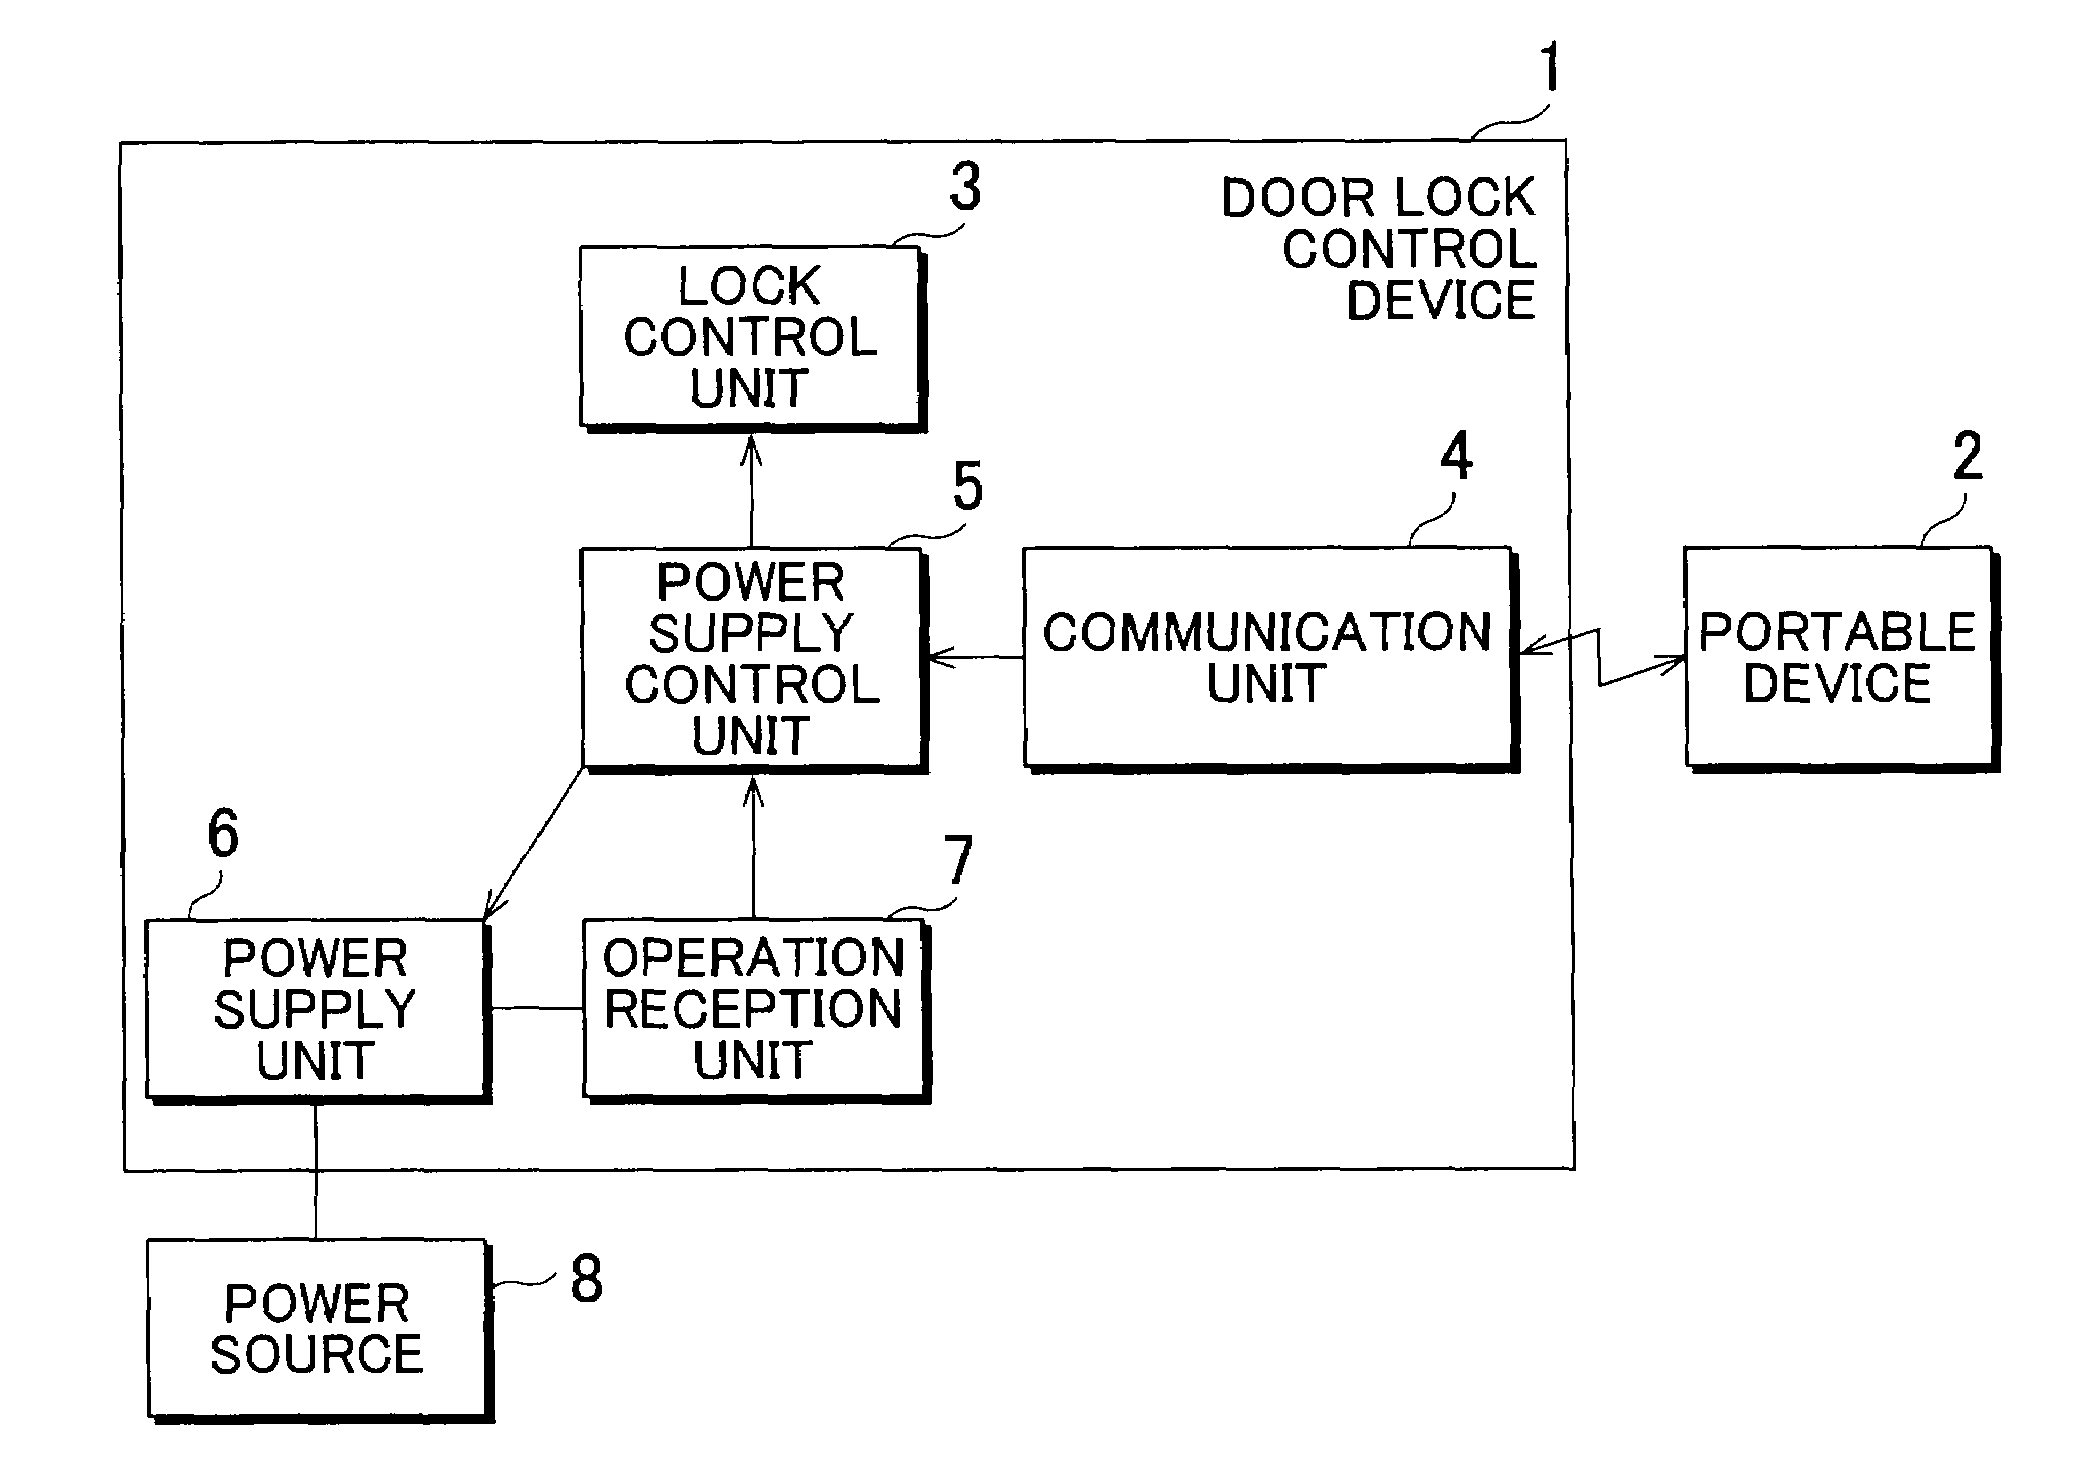 Door lock control device